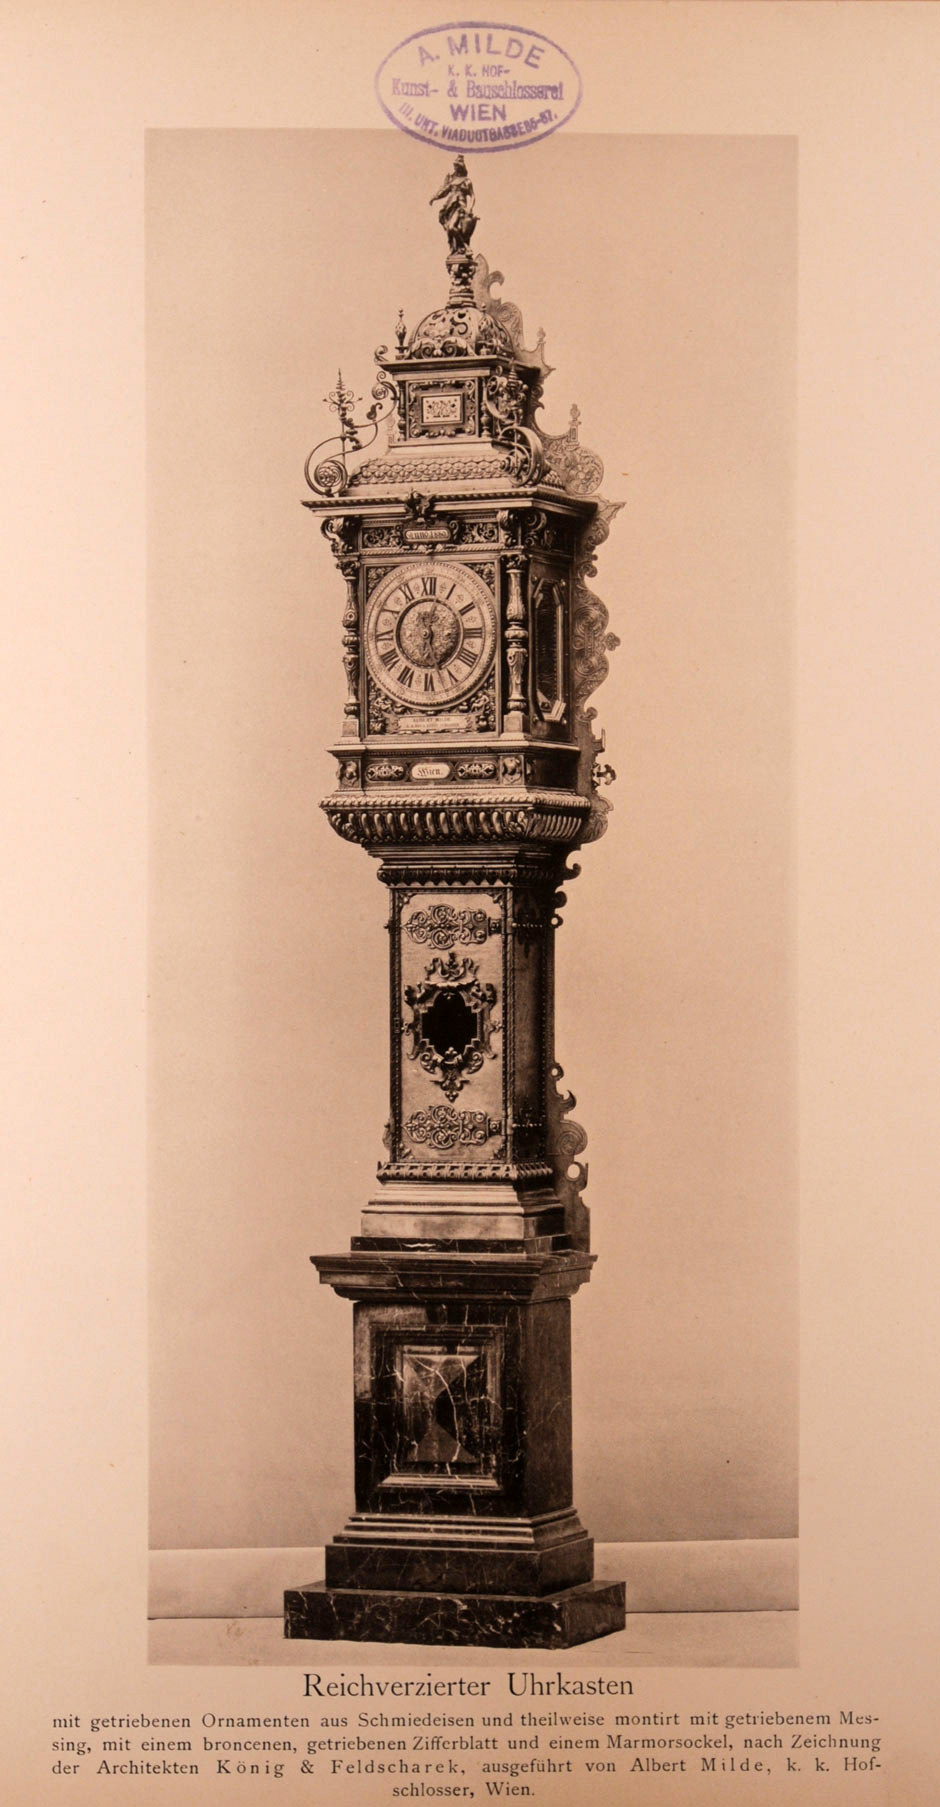 Reichverzierter Uhrkasten mit schmiedeeiserne getriebenen Ornamenten und teilweise montiert mit getriebenen Messing, mit einem bronzenen getriebenen Ziffernblatt und einem Marmorsockel